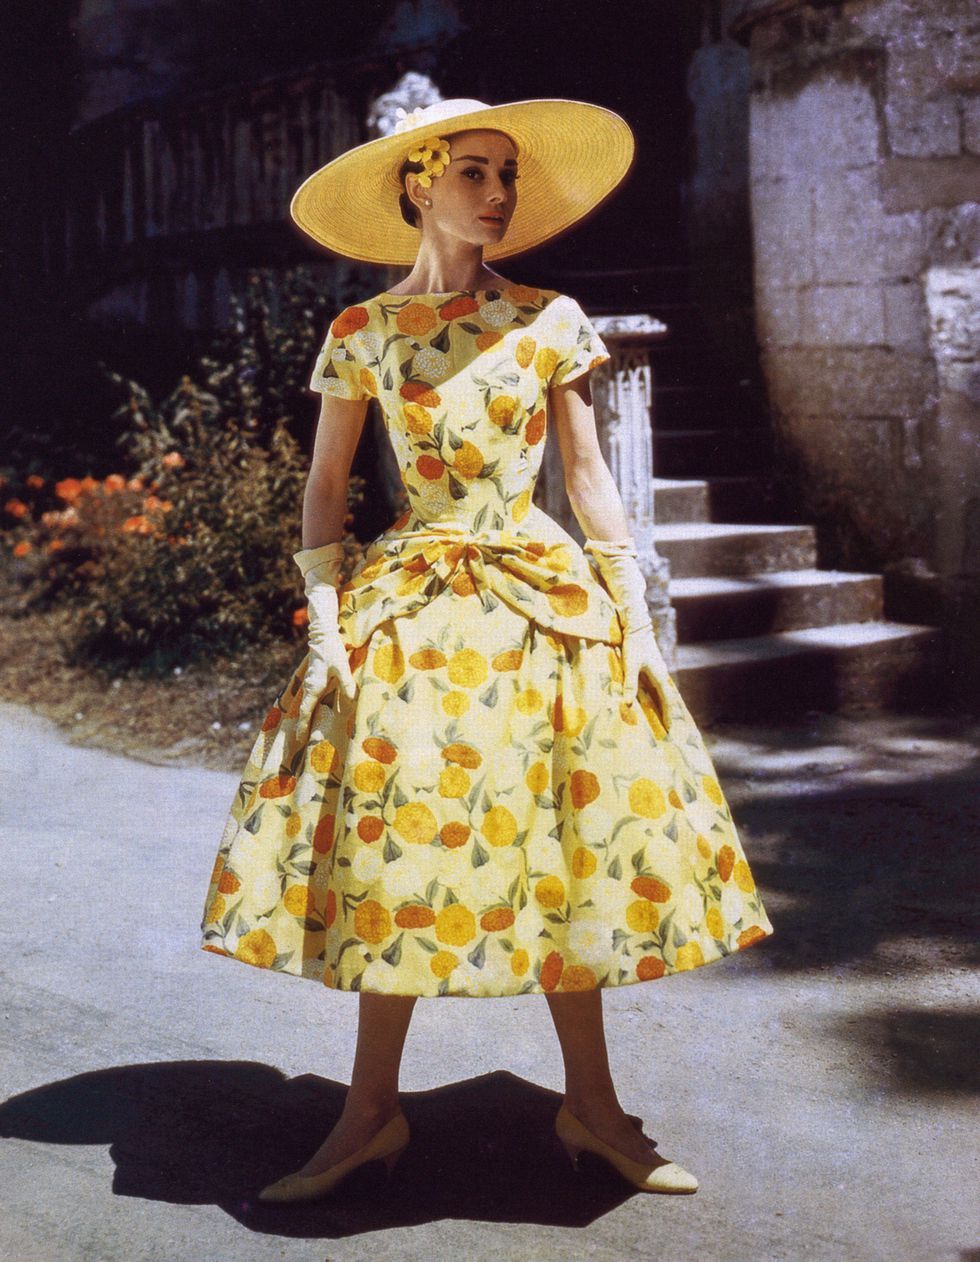 オードリー・スタイル”を作り上げた、「ジバンシィ」の代表的なドレス35